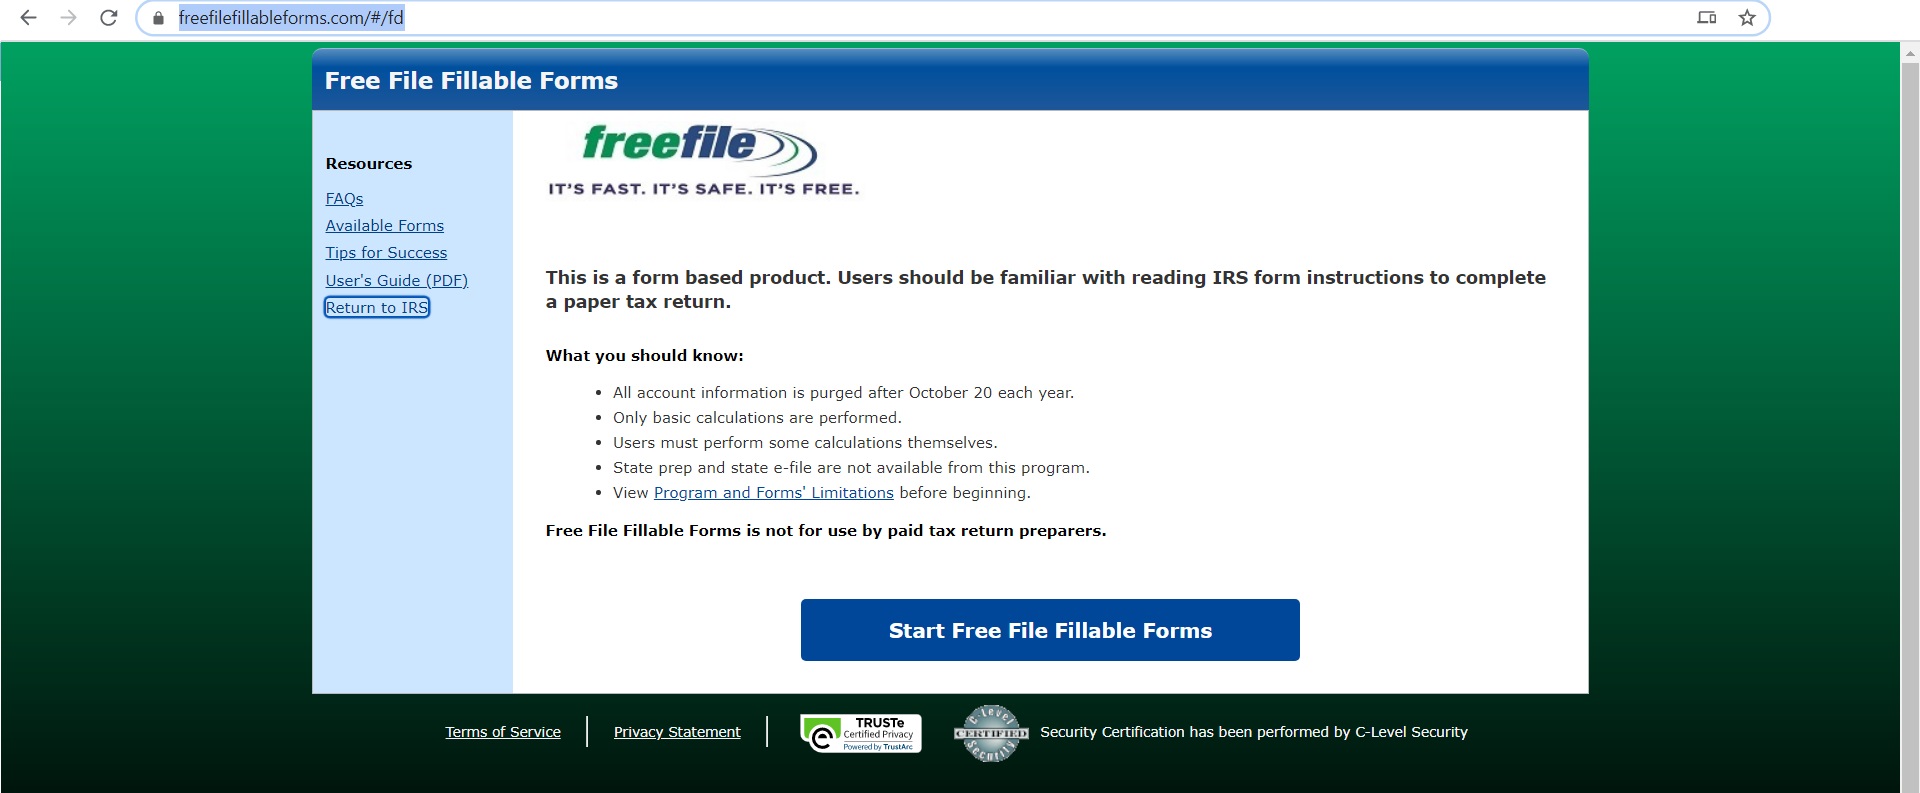 freefilefillableforms.com